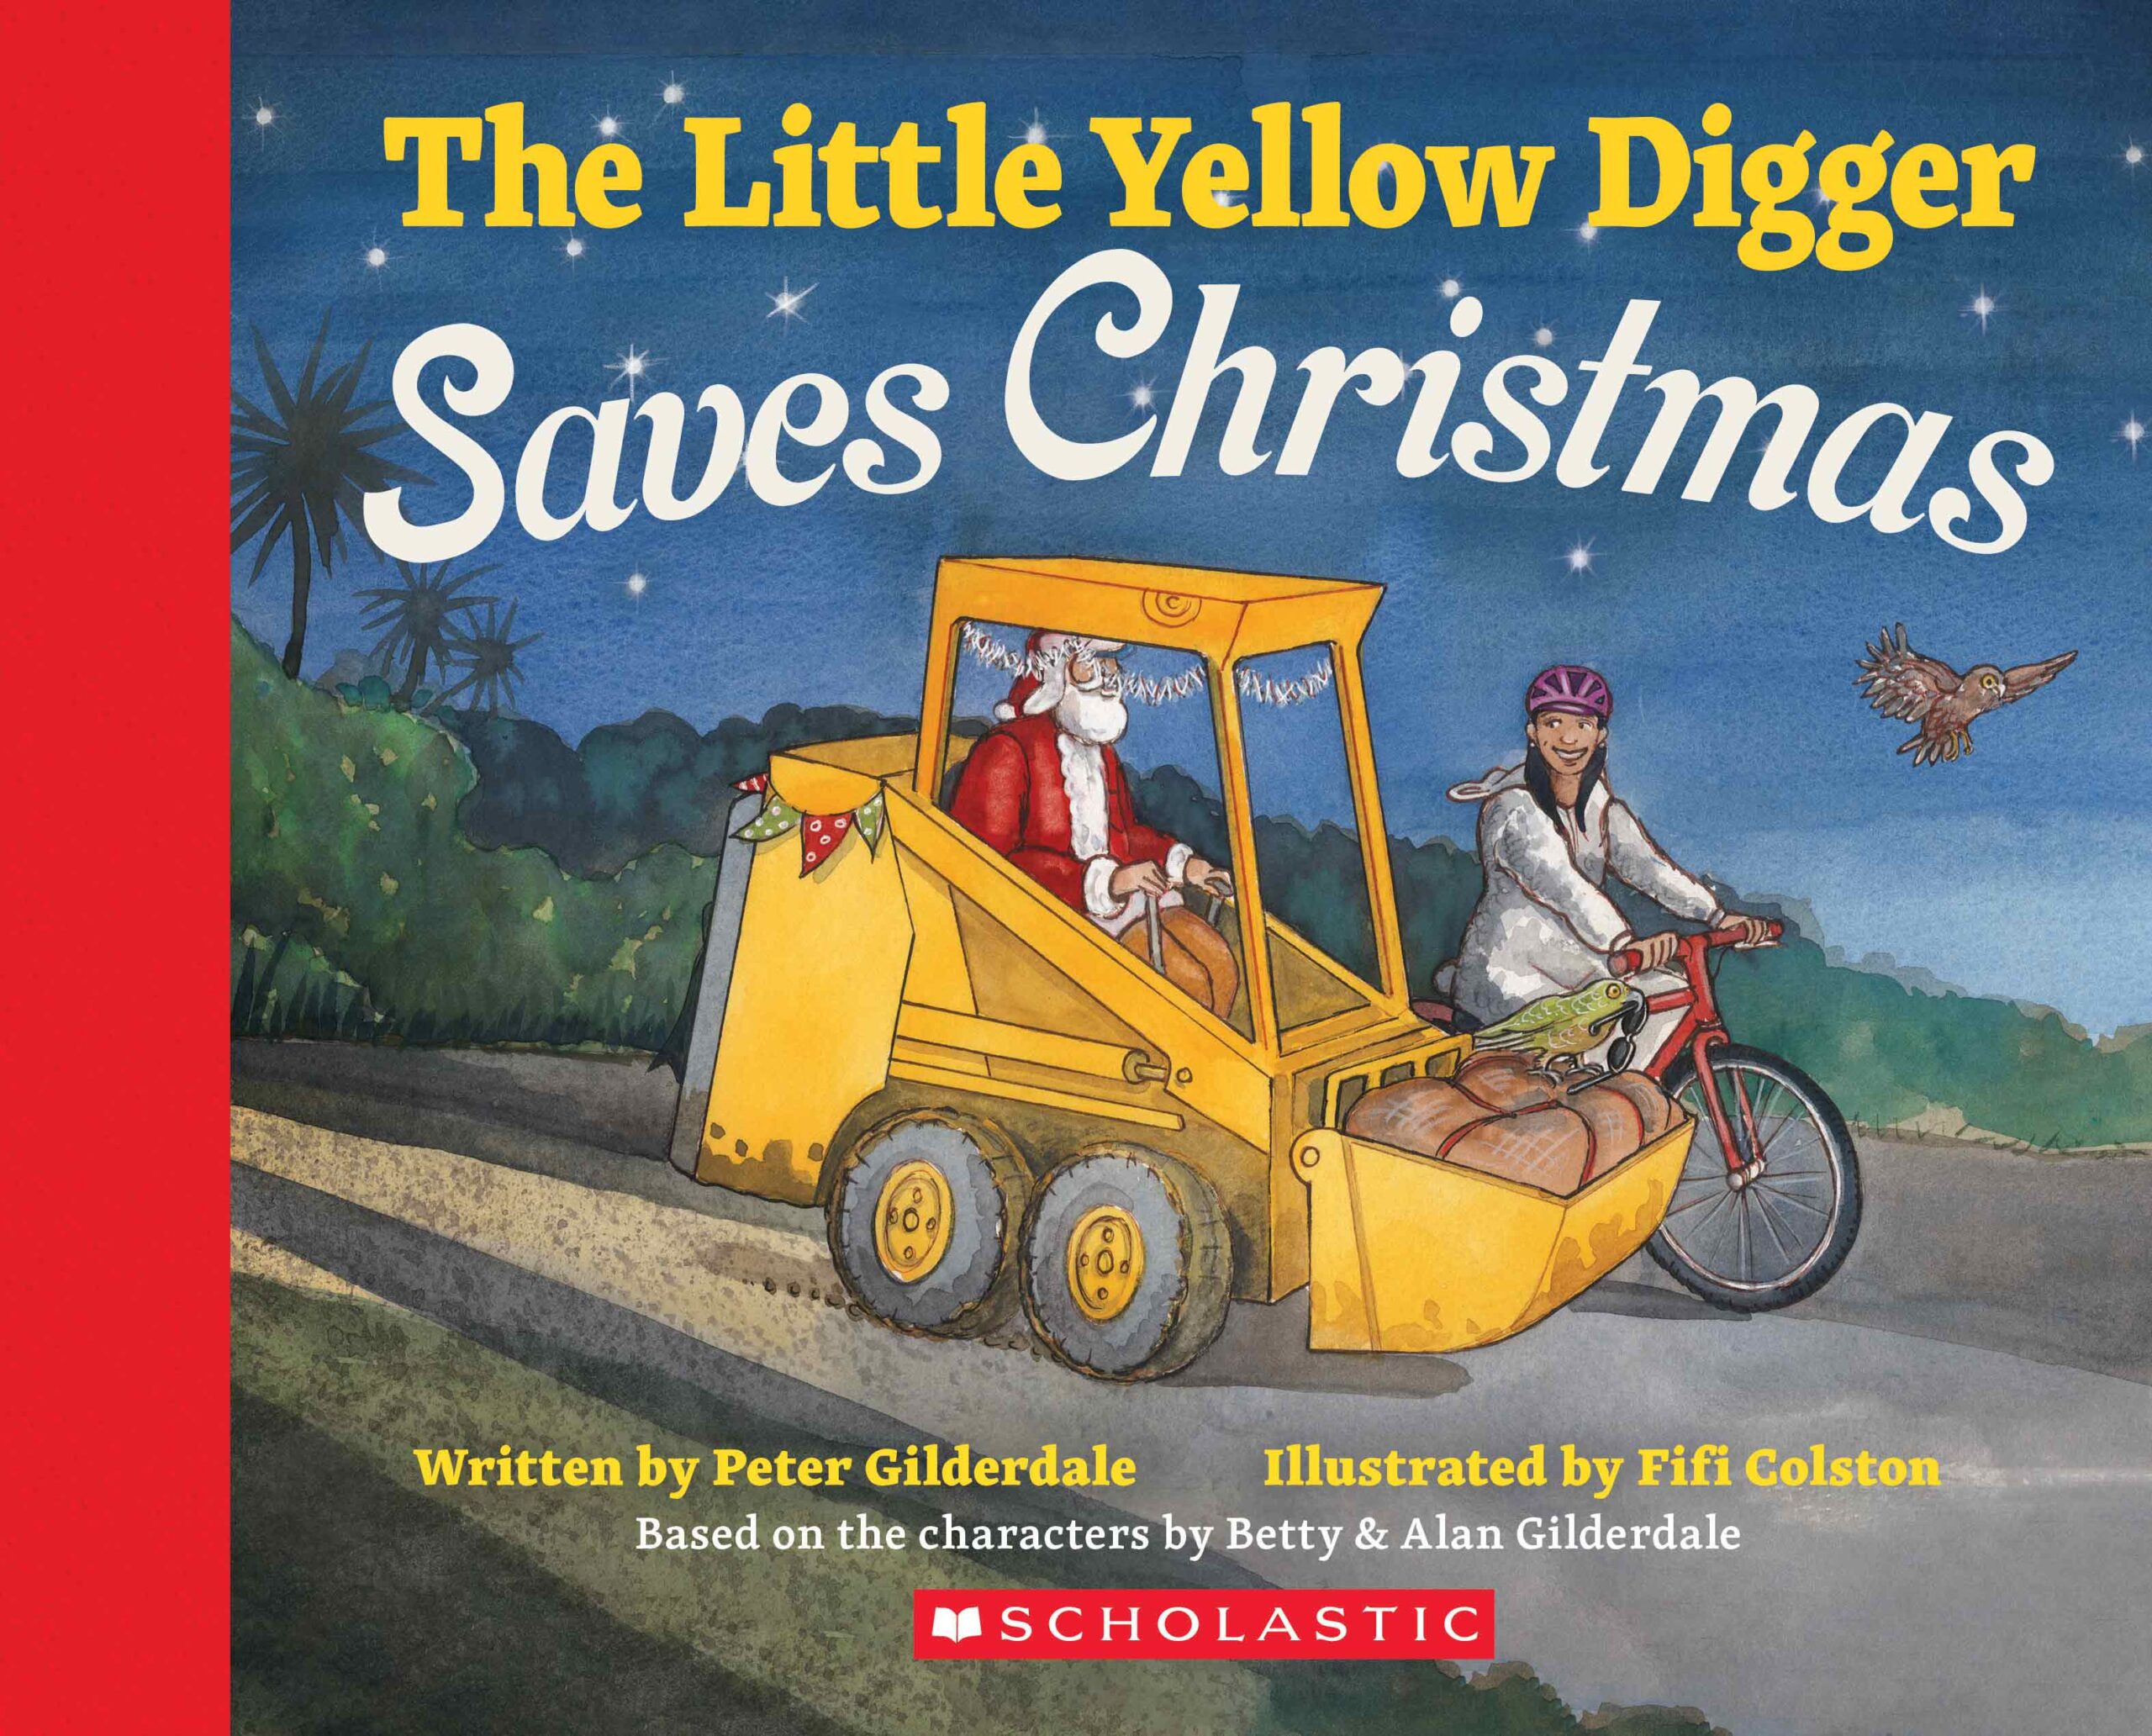 The-Little-Yellow-Digger-Saves-Christmas: Image of the cover of the book “The Little Yellow Digger Saves Christmas”.